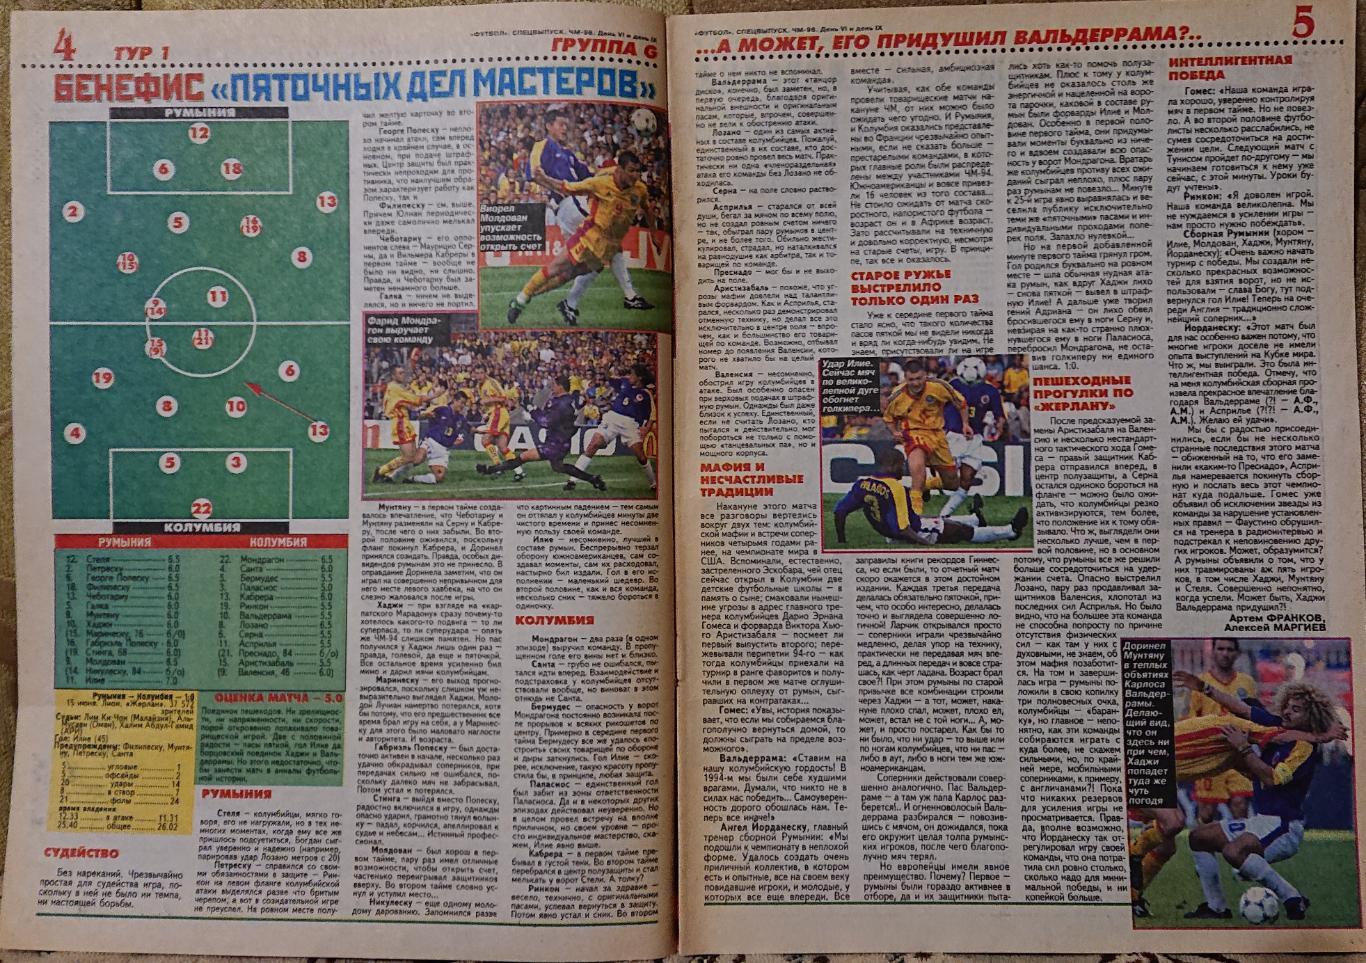 Футбол.Журнал. Спецвипуск.Чемпіонат світу 1998. 2